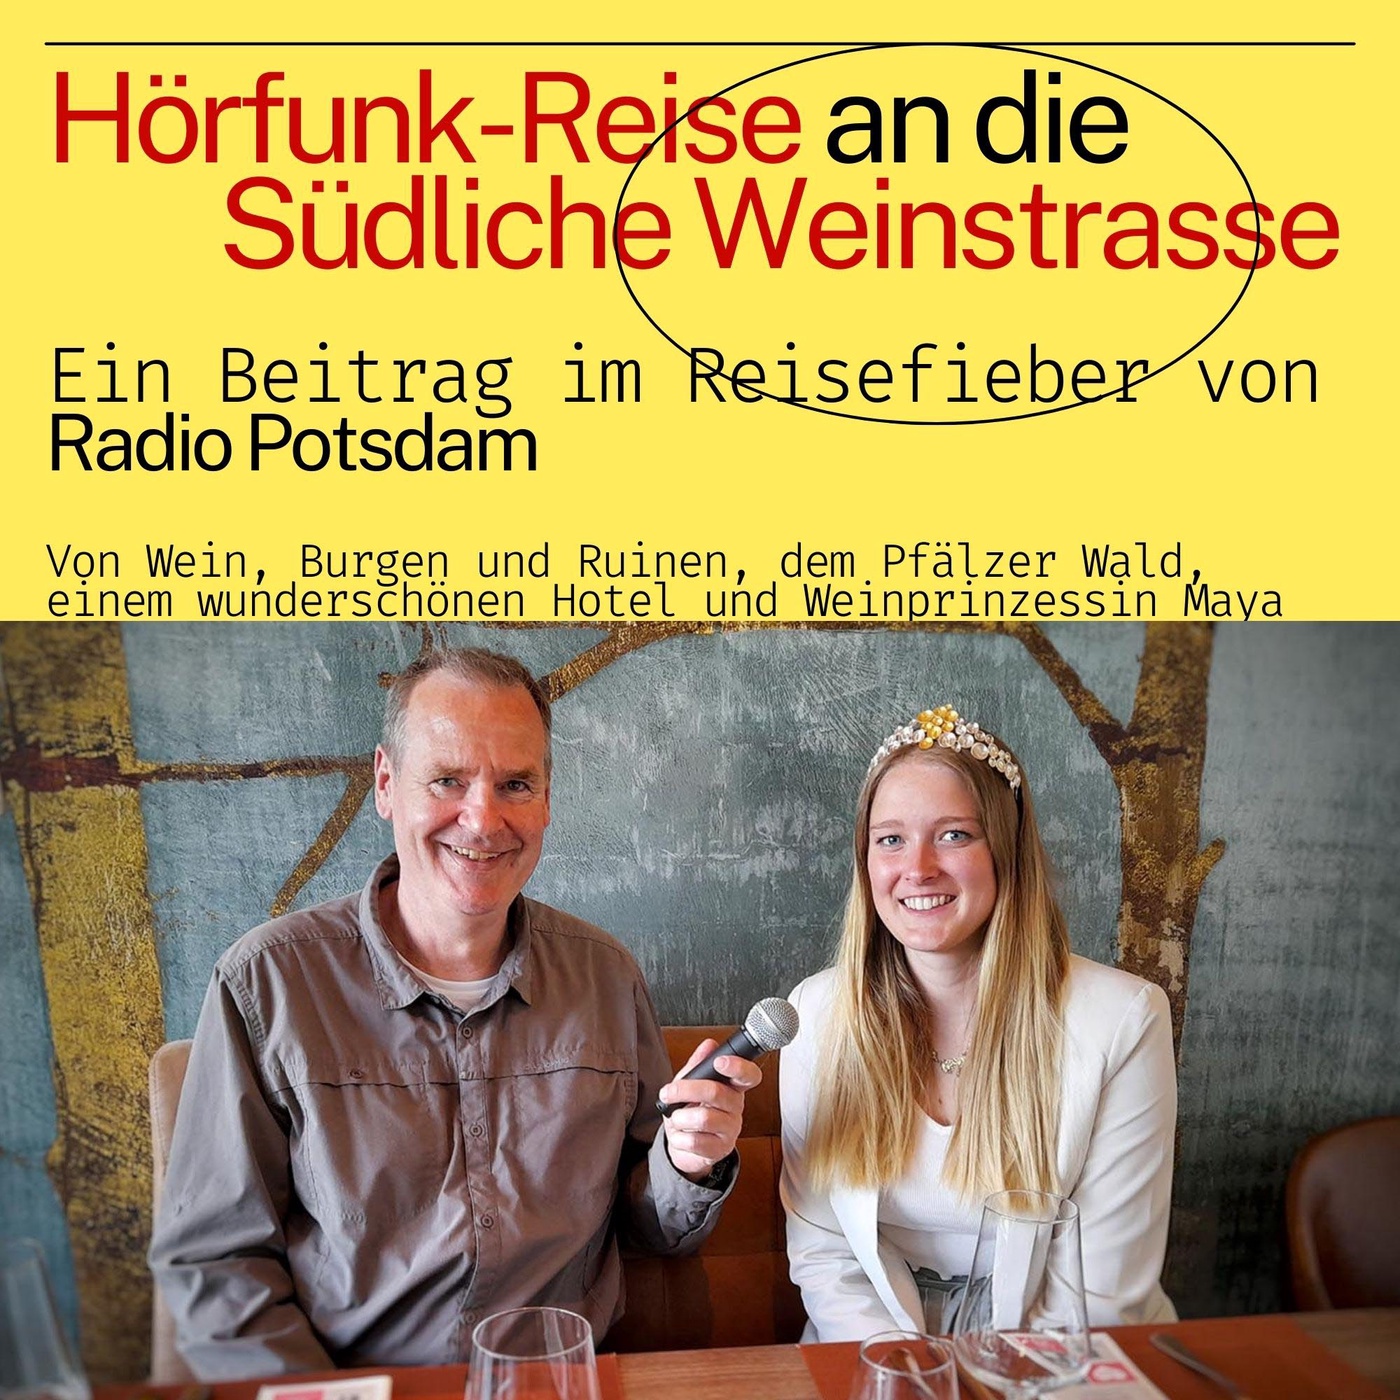 #67 Podcast: Die Südliche Weinstrasse - eine Hörfunk Reise mit dem Radio Potsdam Reisefieber